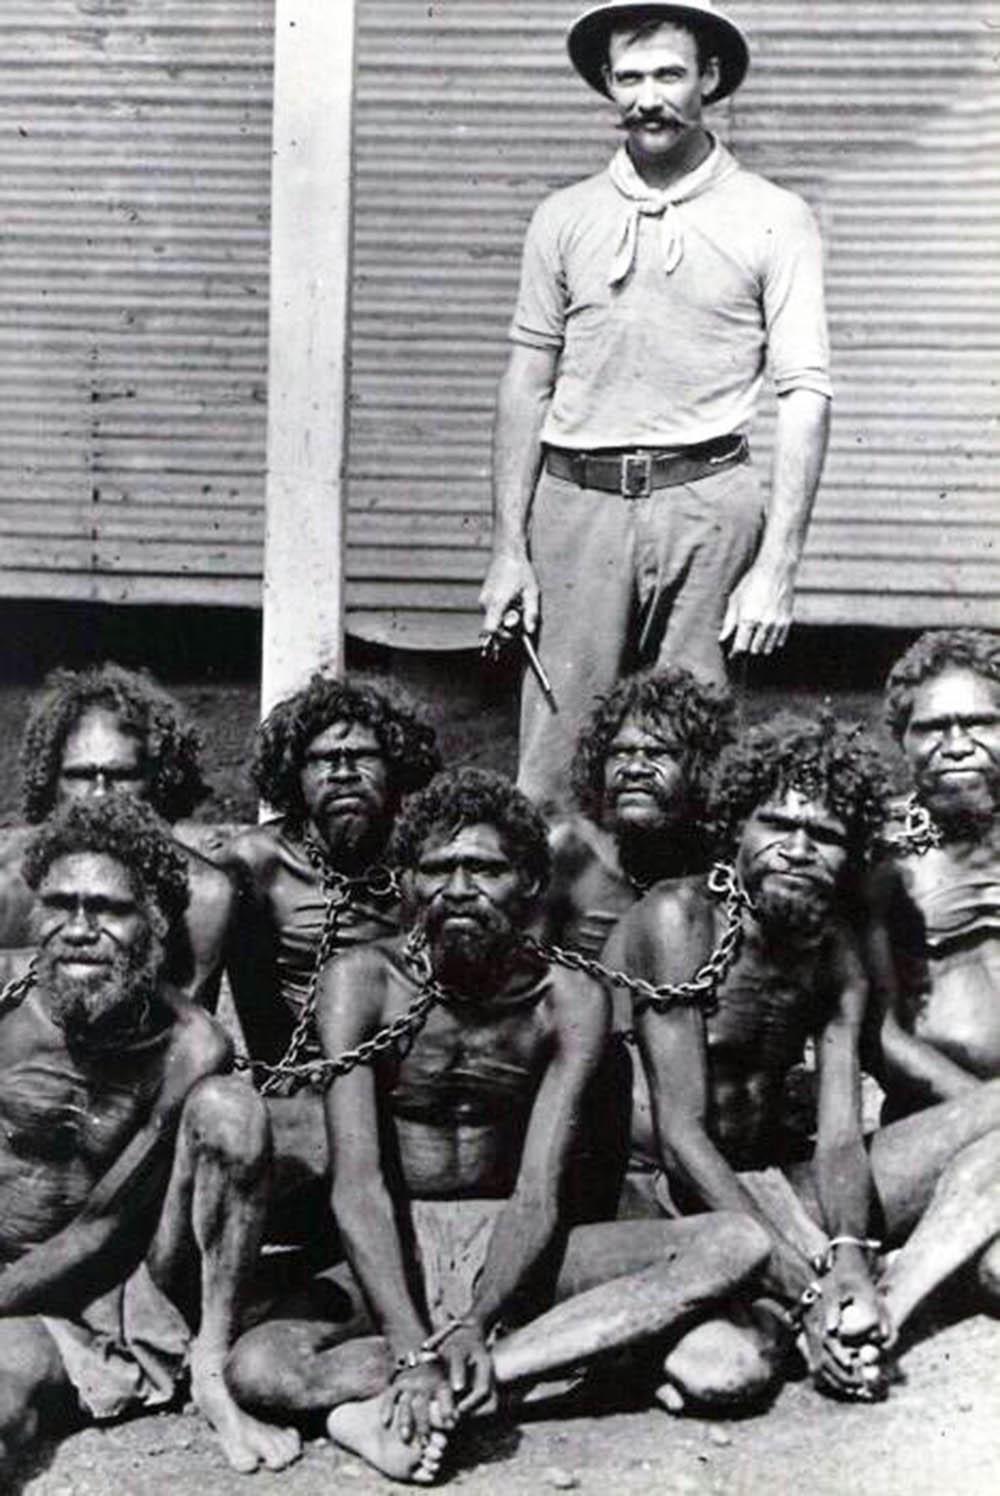 Les Aborigènes d'australie dans les chaînes de Wyndham prison, 1902